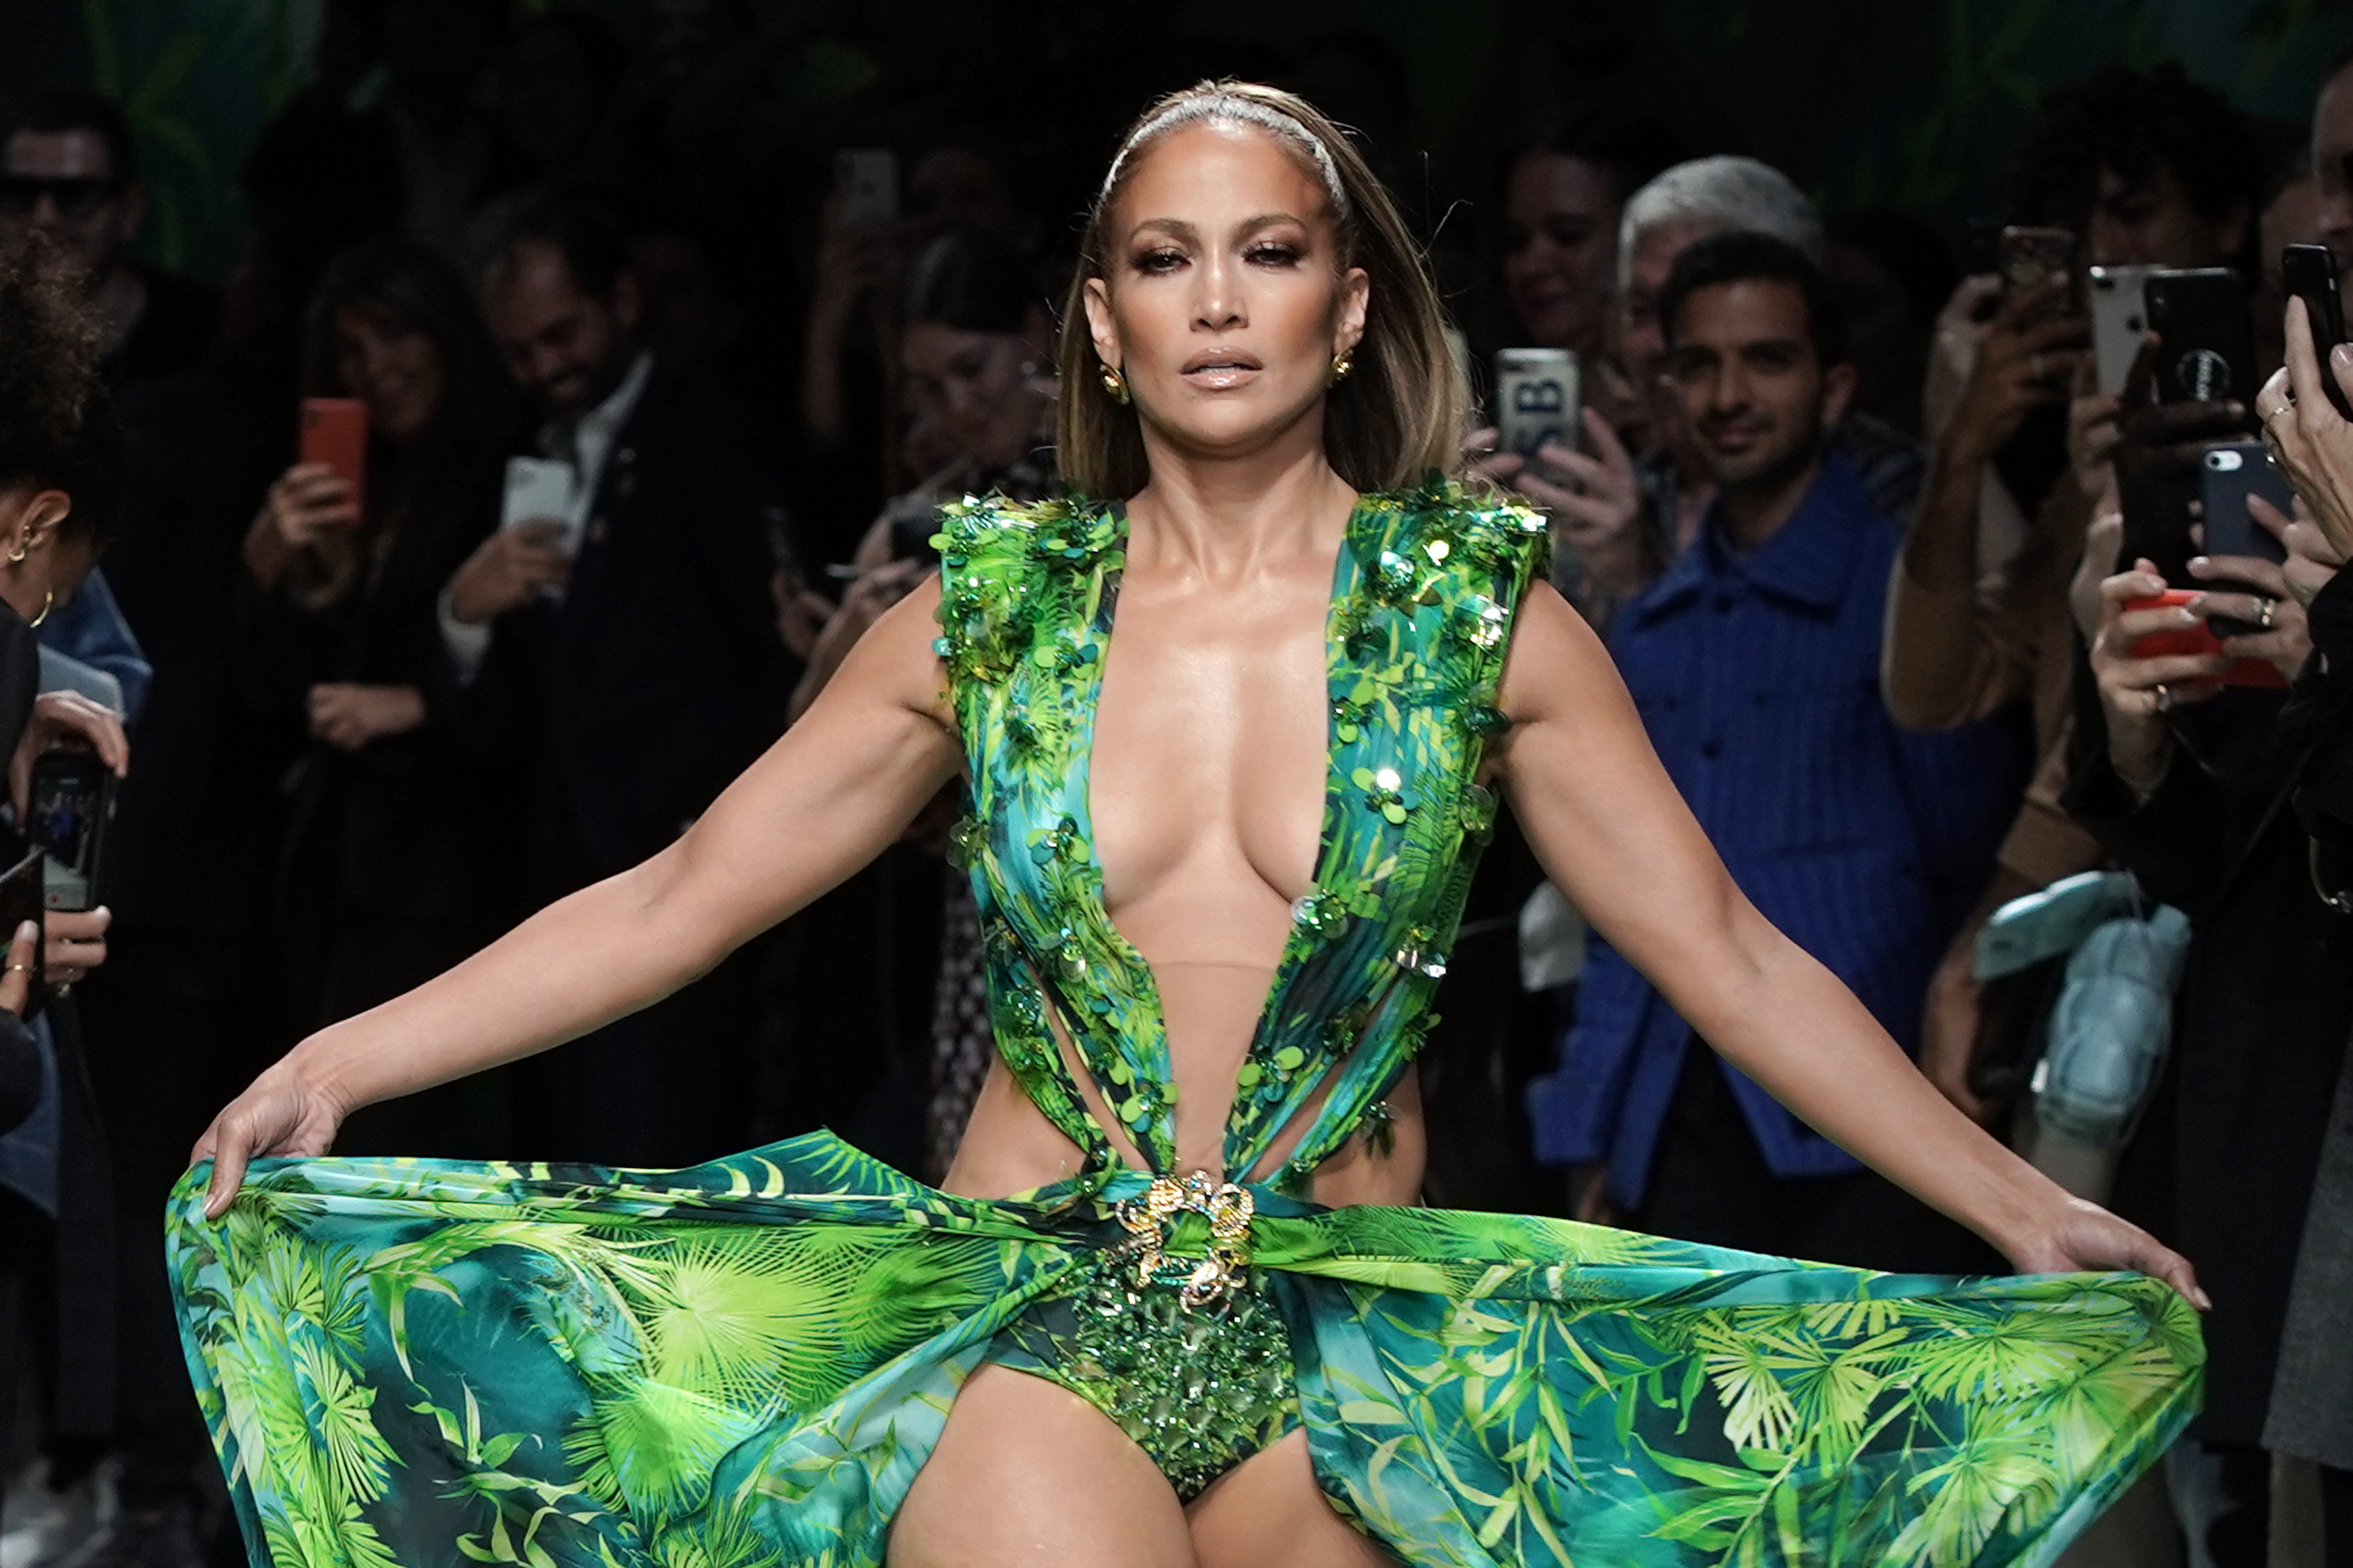 Jennifer Lopez walks the runway in a green dress.